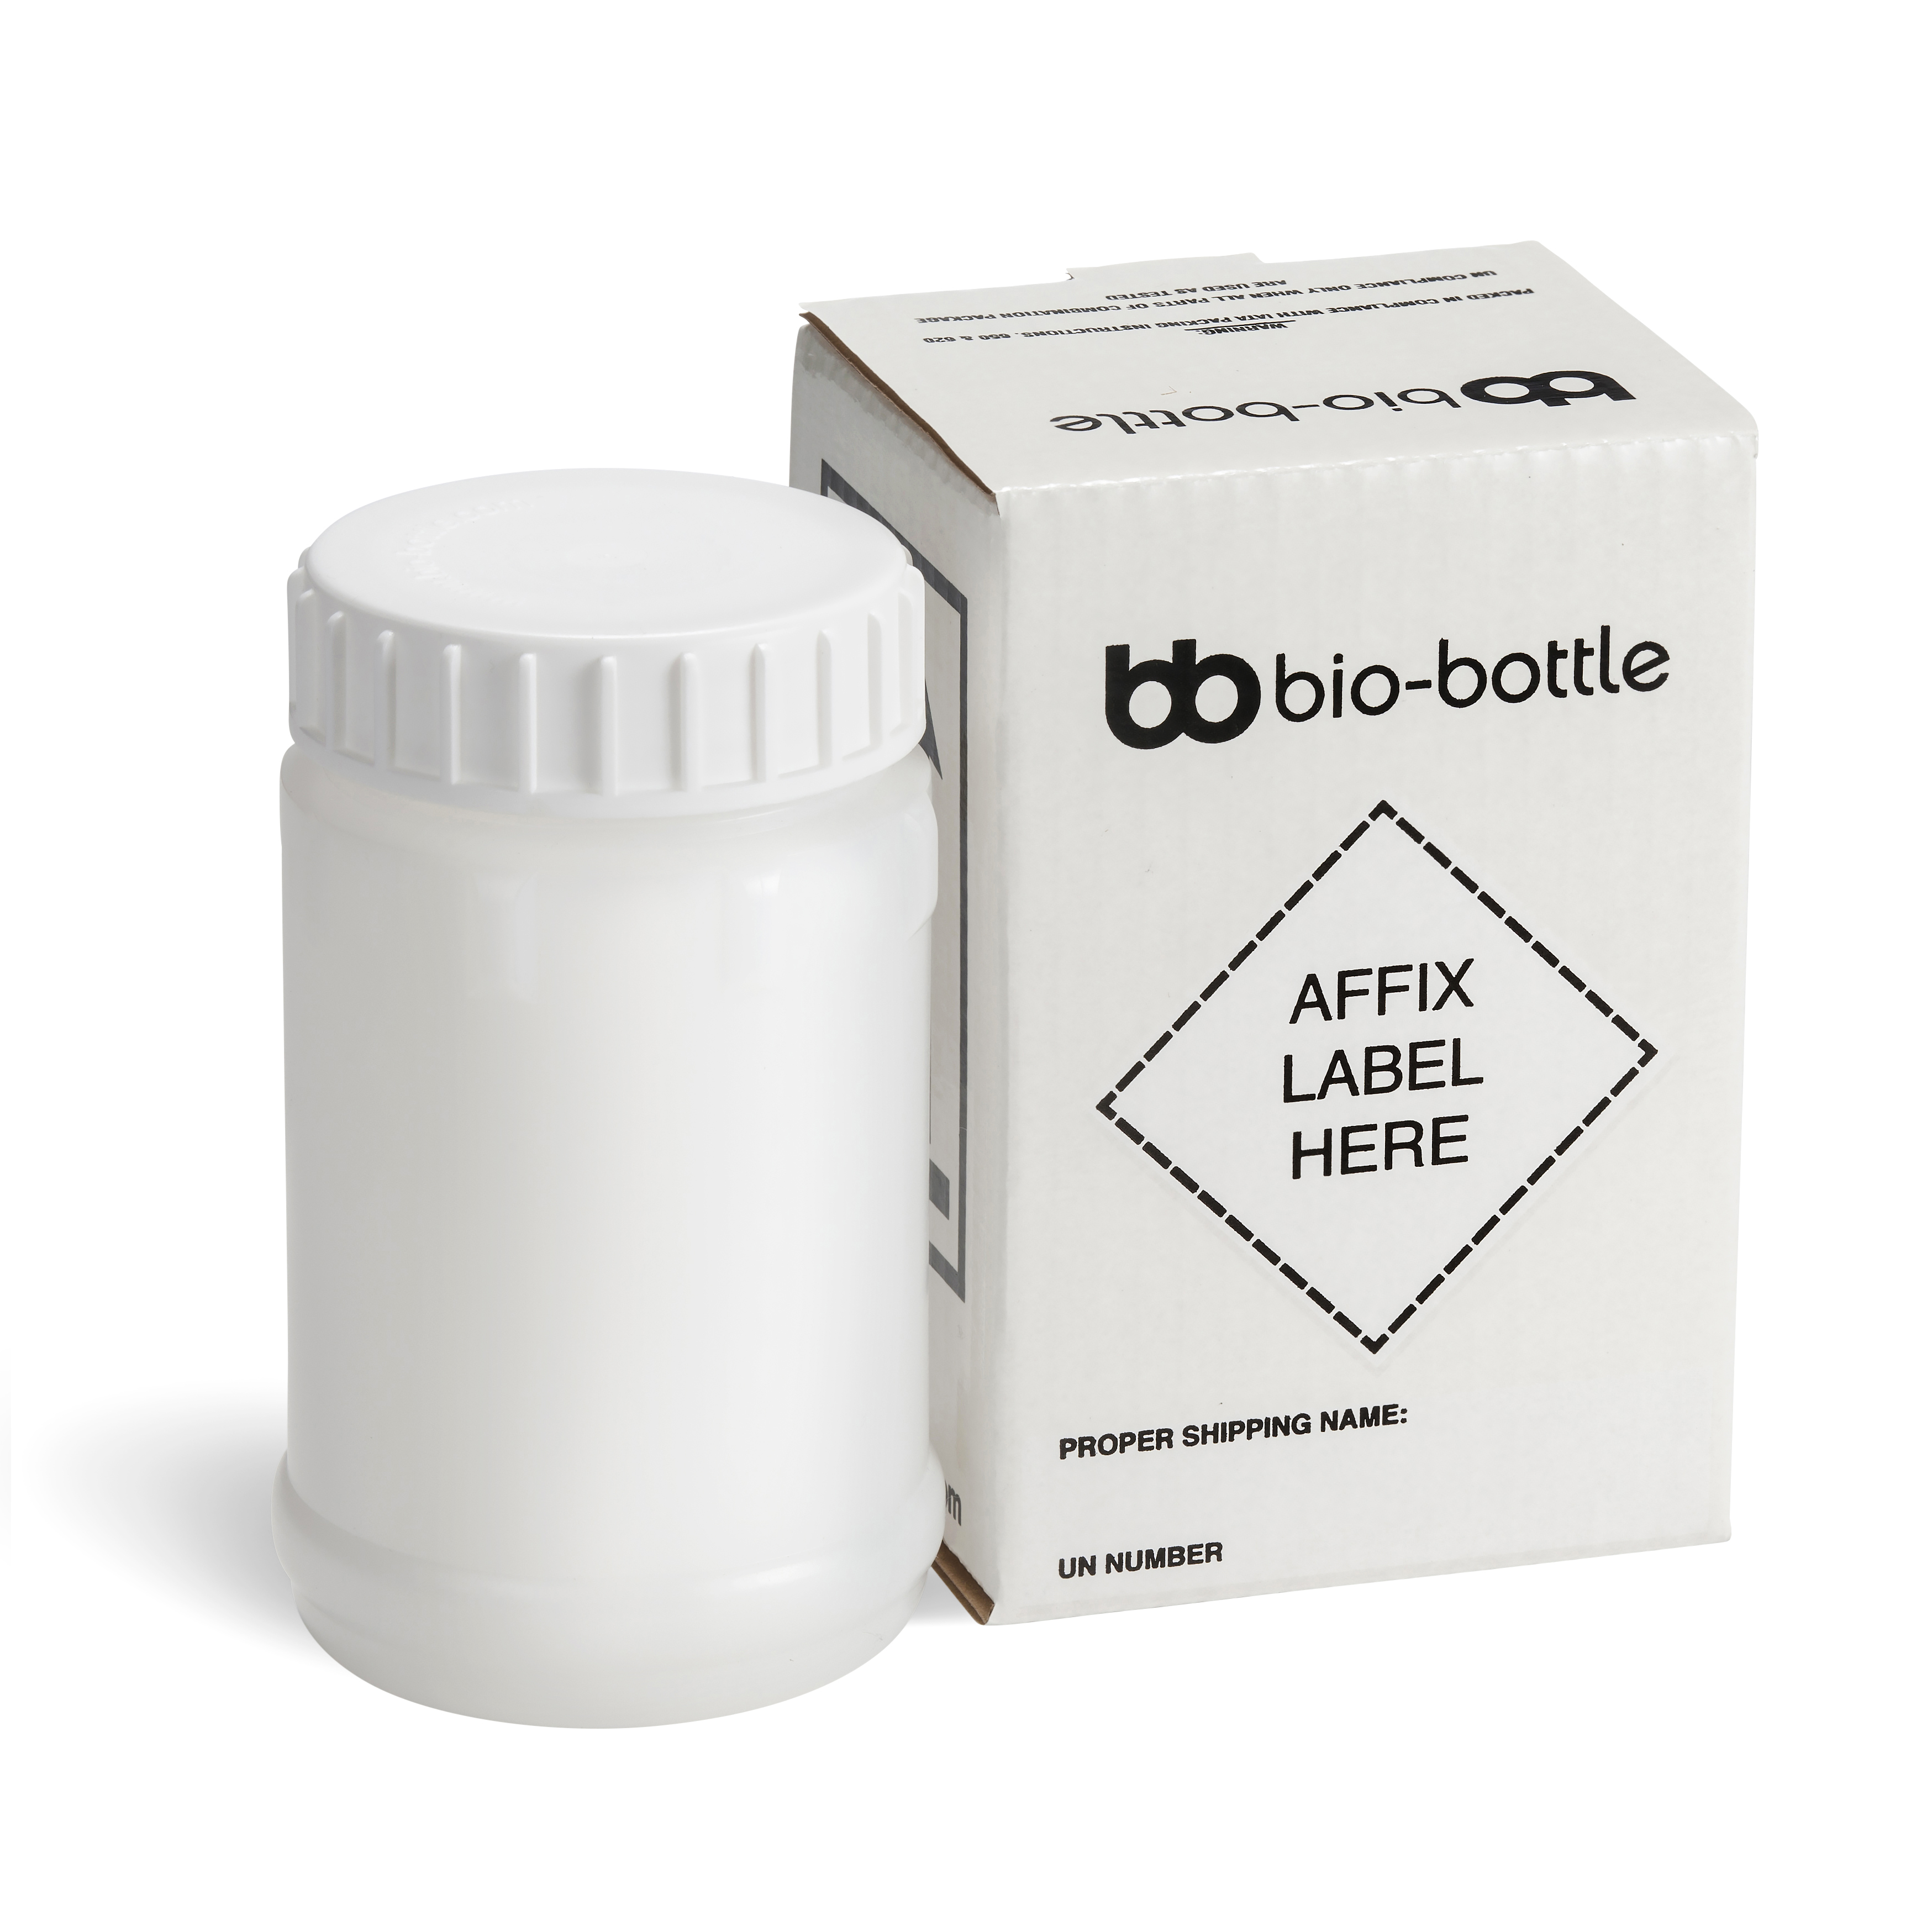 White bio-bottle